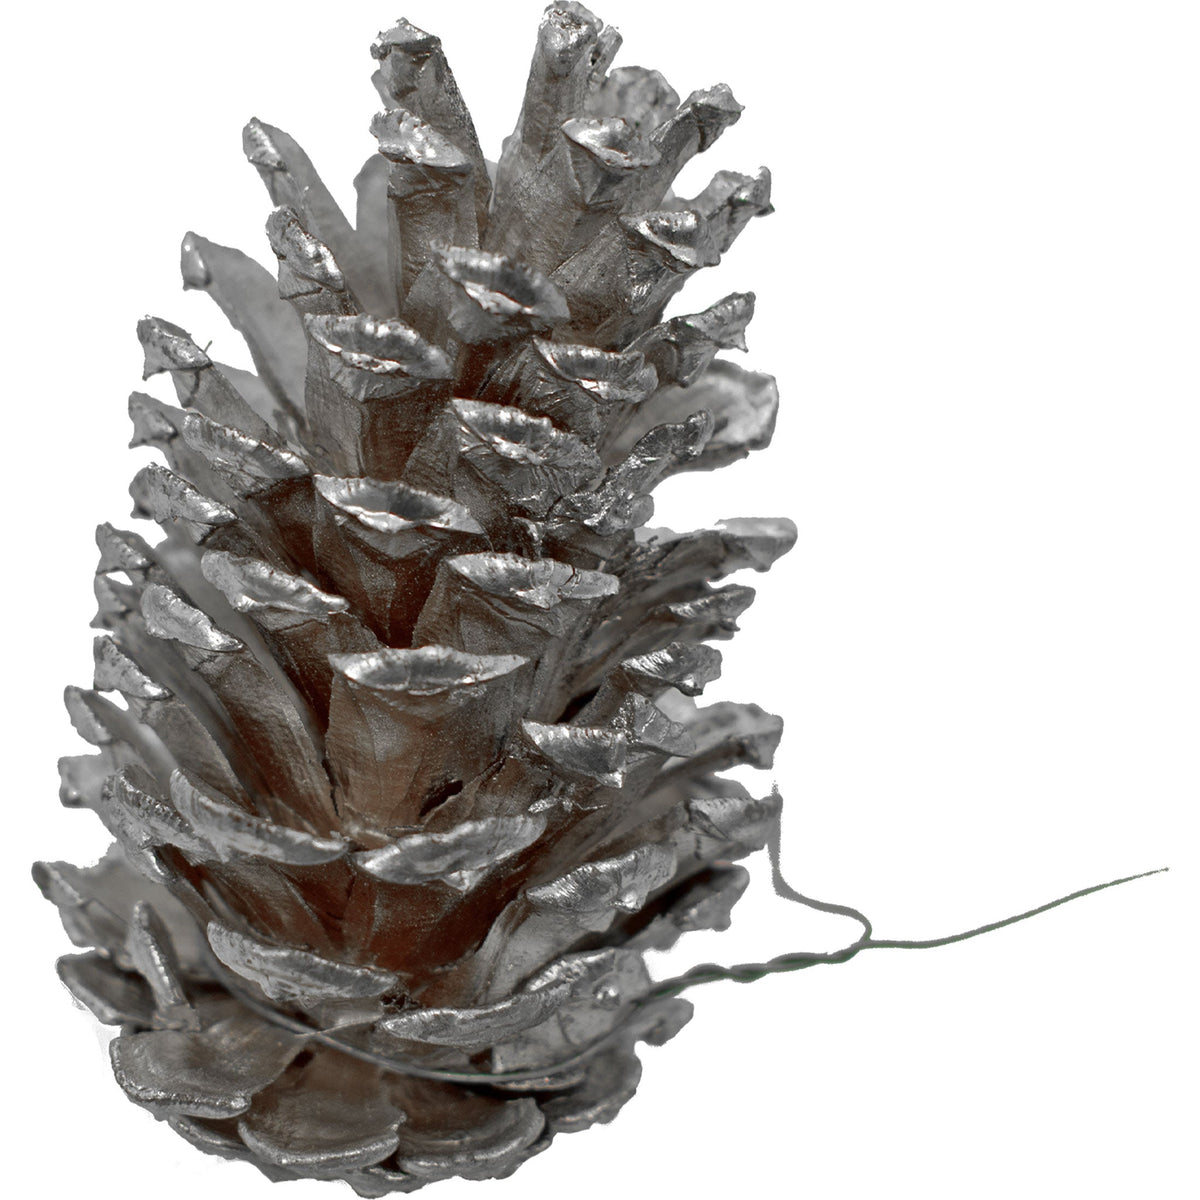 Silver Pine Cones